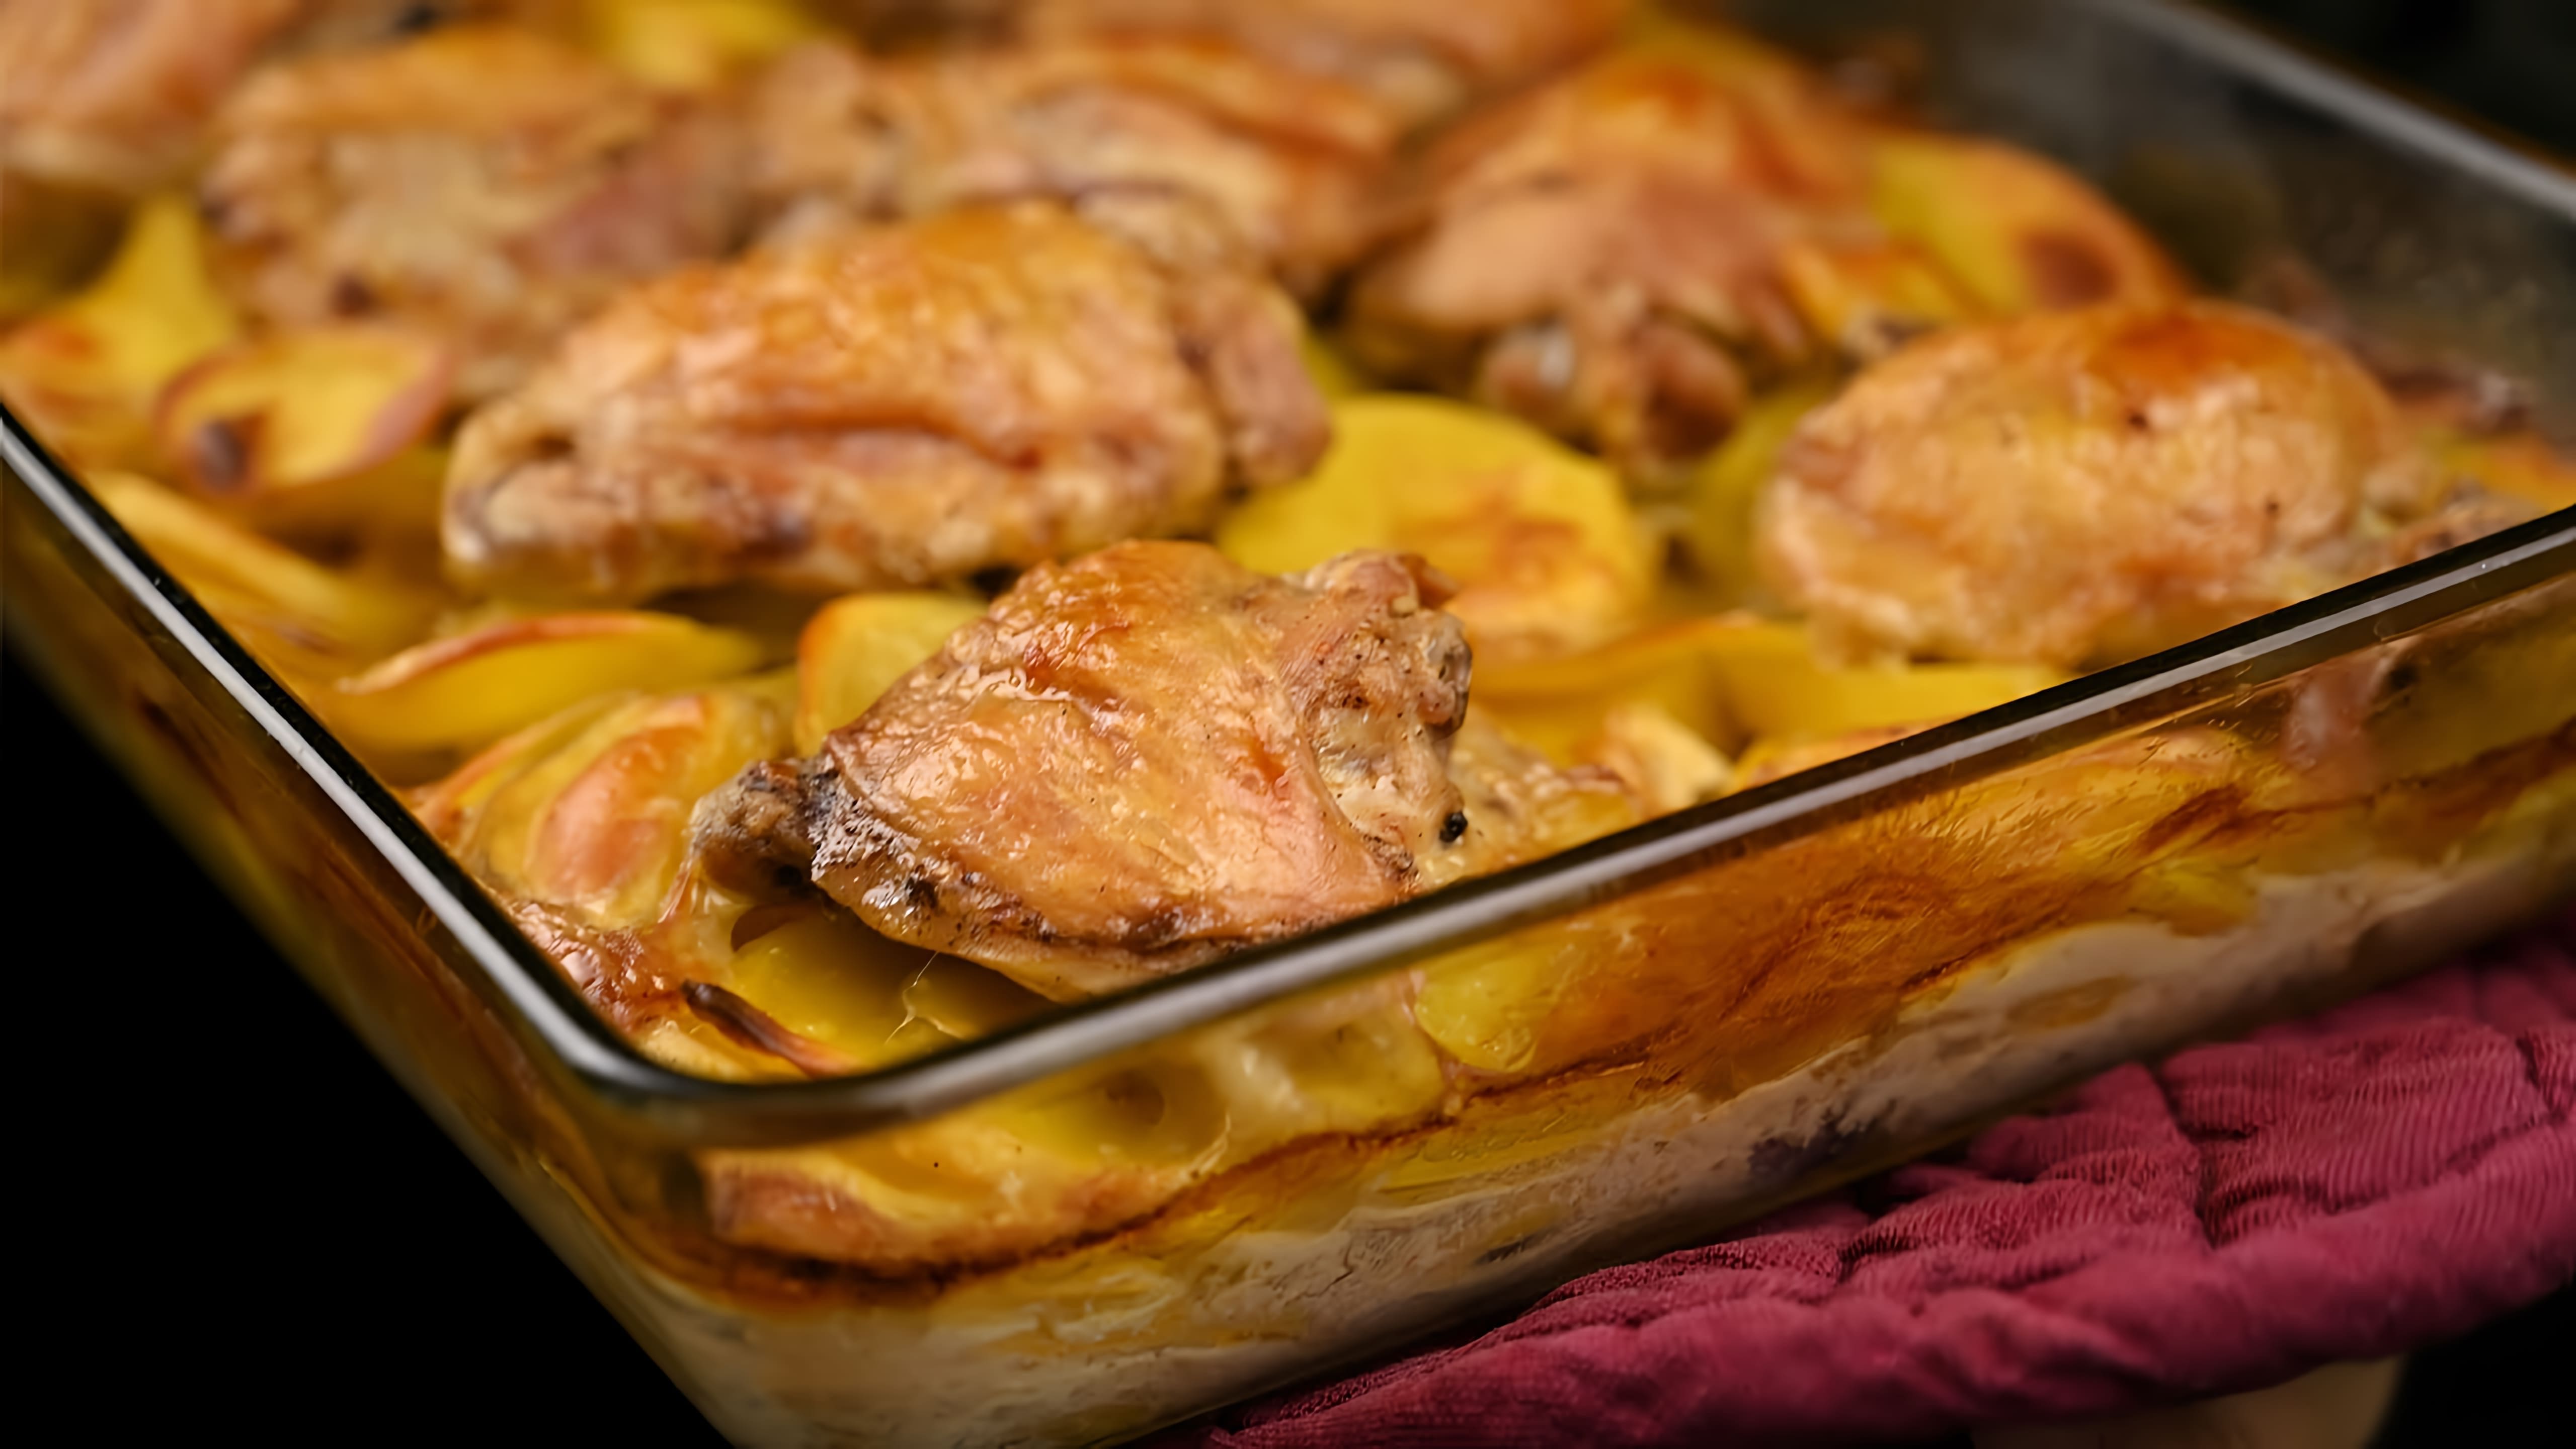 В этом видео демонстрируется процесс приготовления любимого новогоднего блюда из 90-х годов - курицы с картошкой в духовке